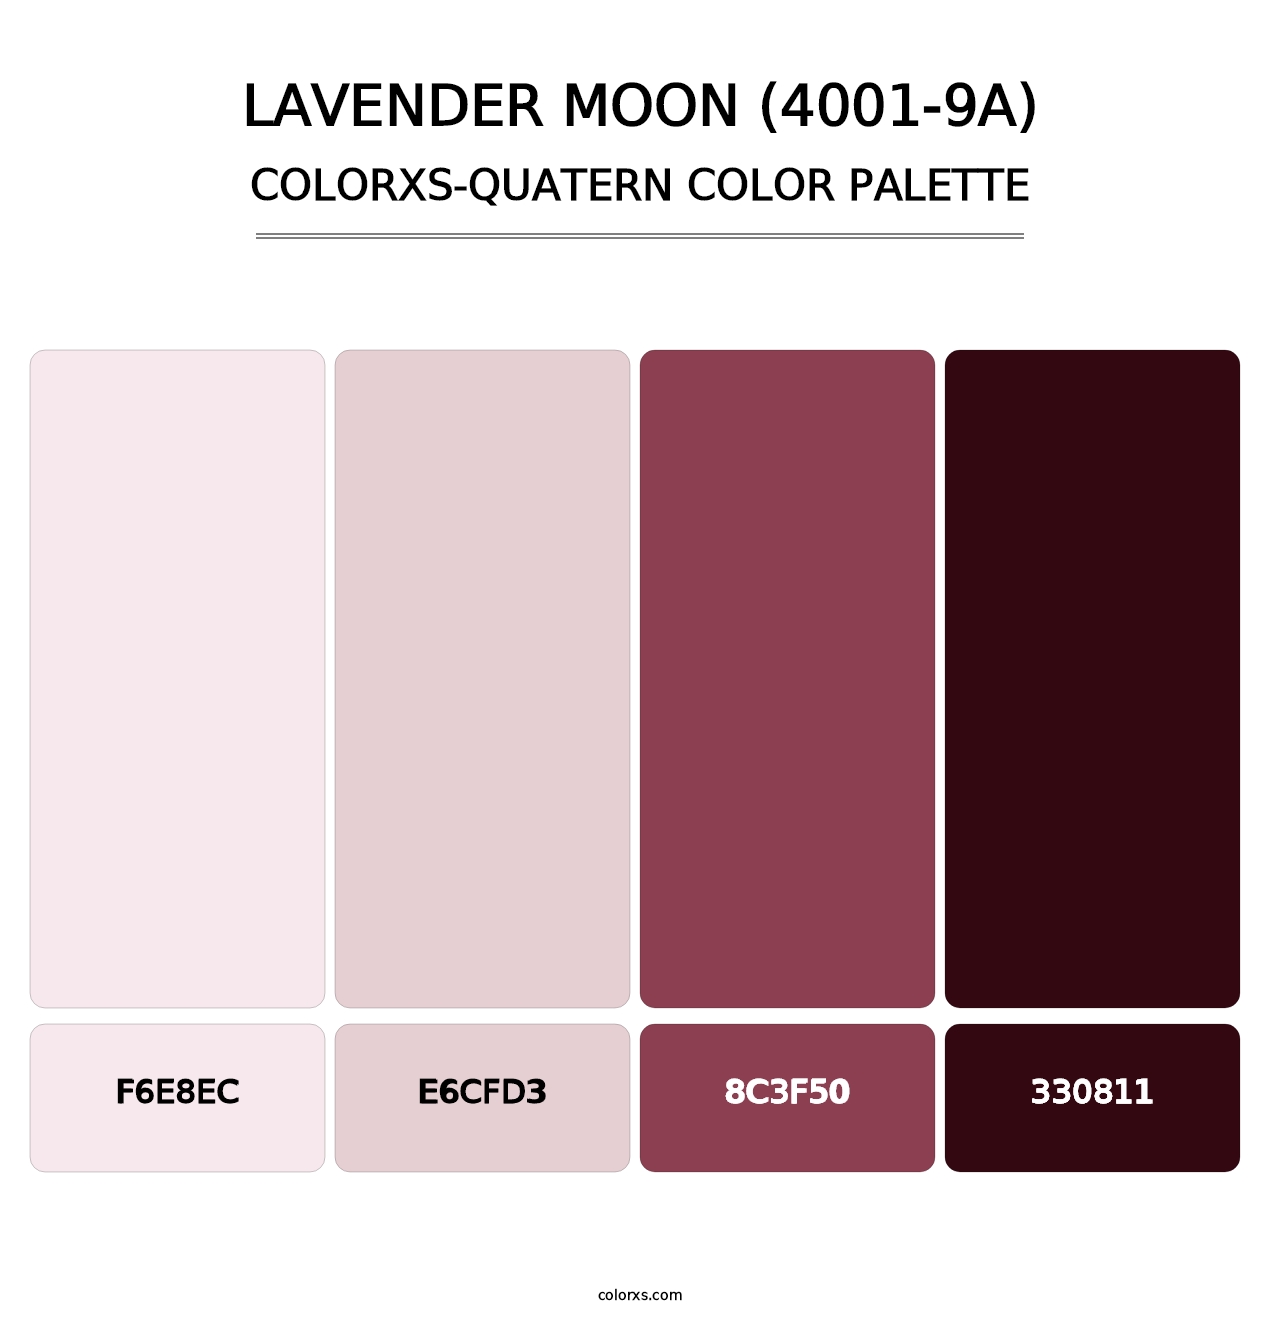 Lavender Moon (4001-9A) - Colorxs Quatern Palette